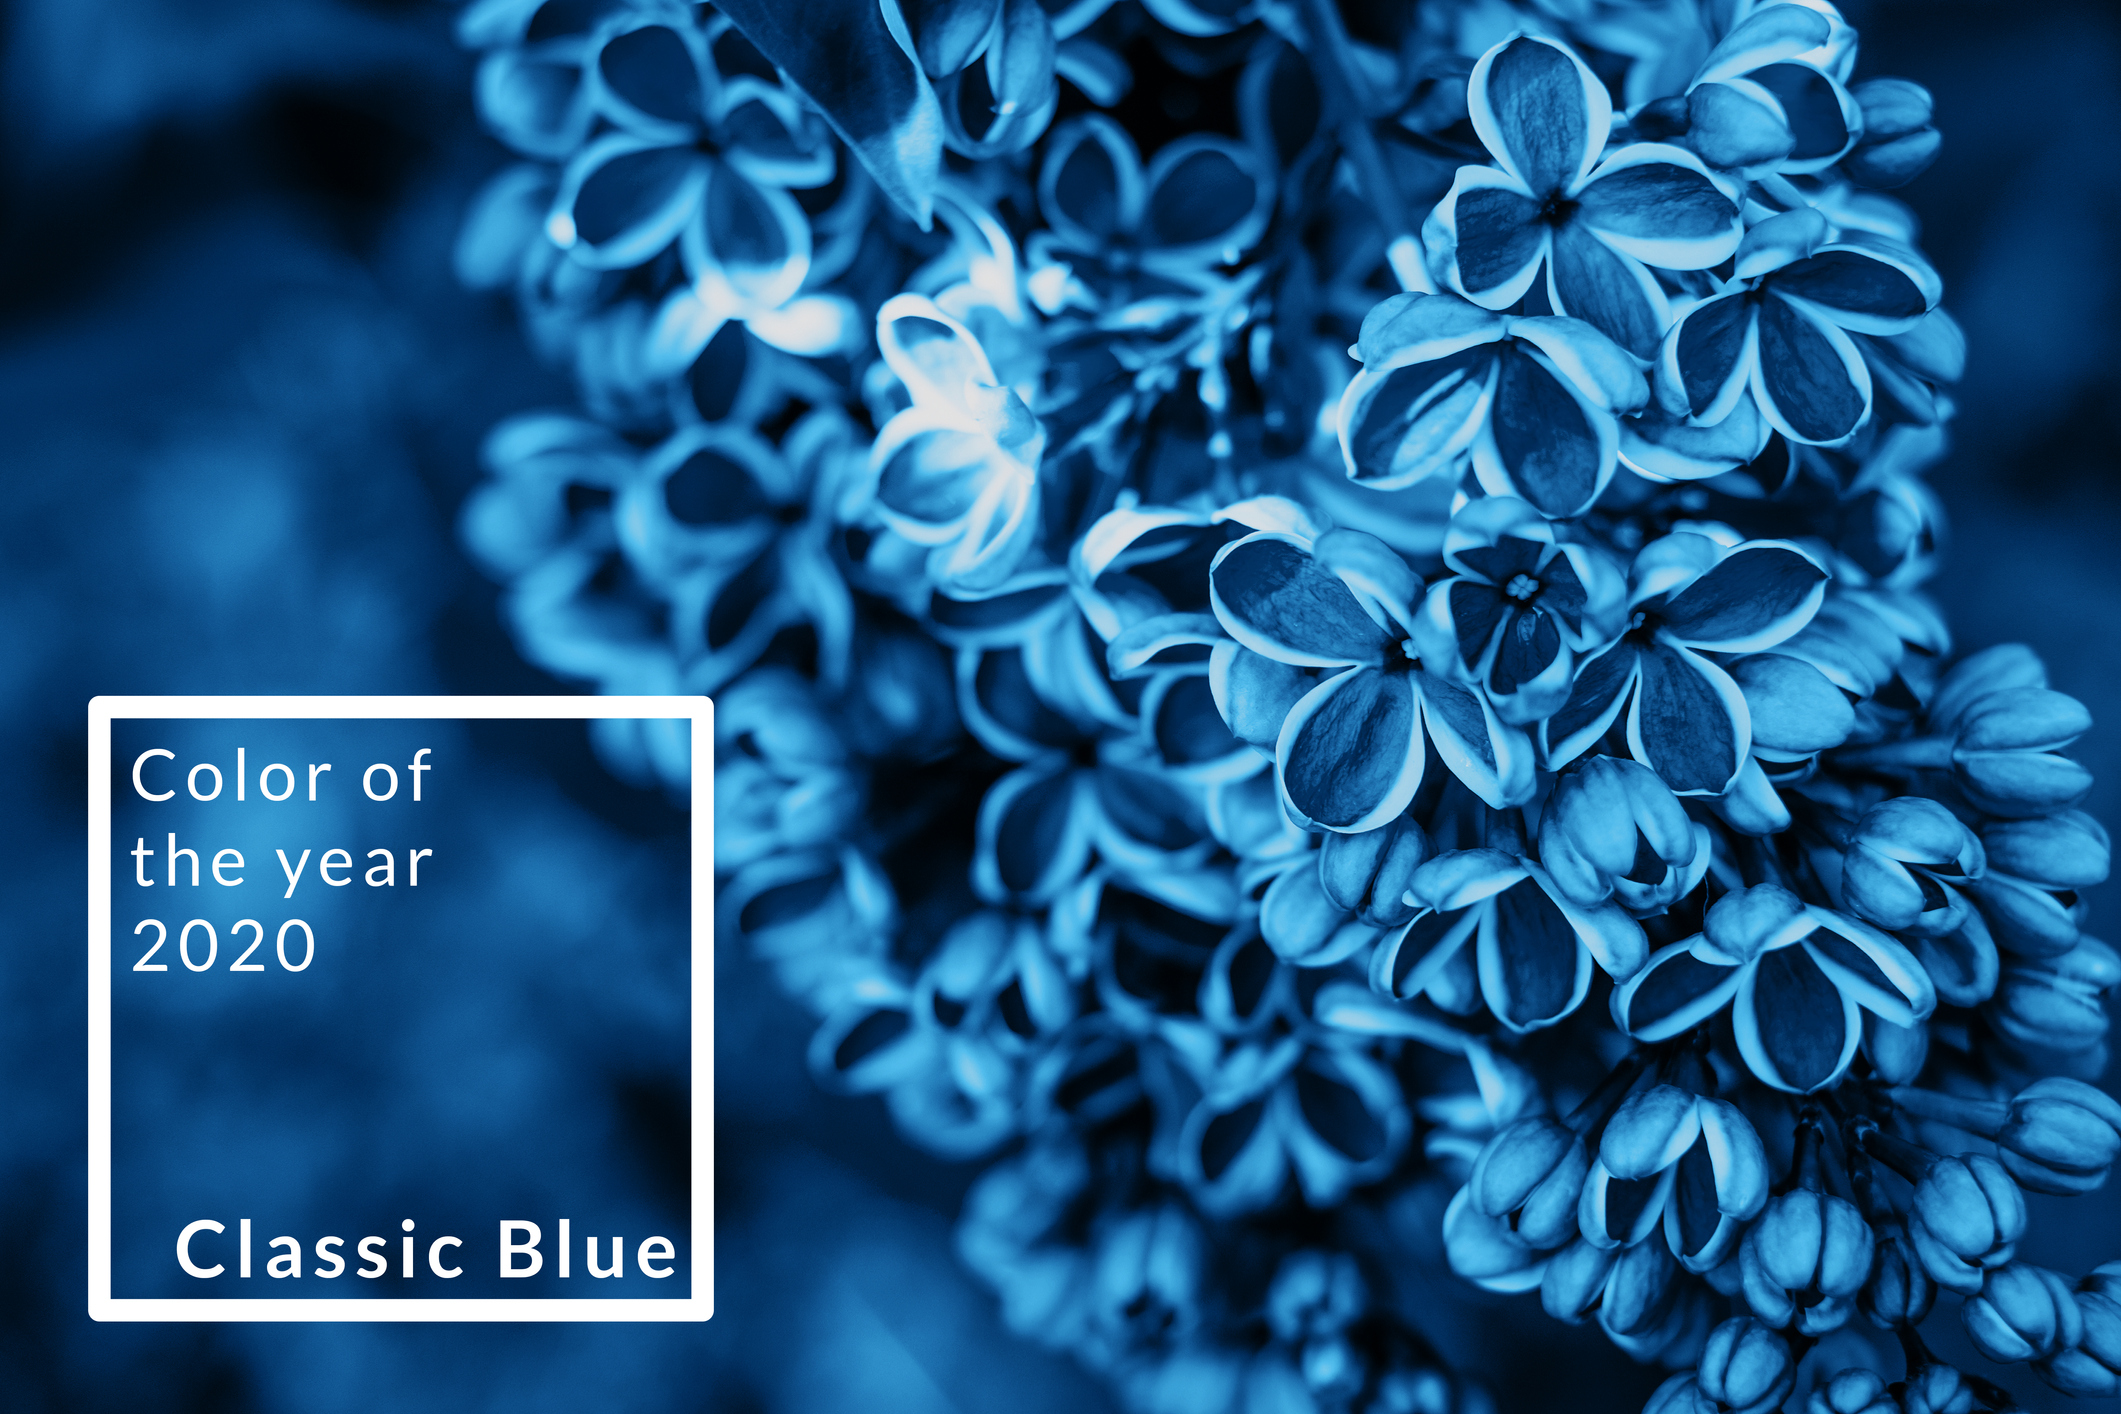 pantone classic blue